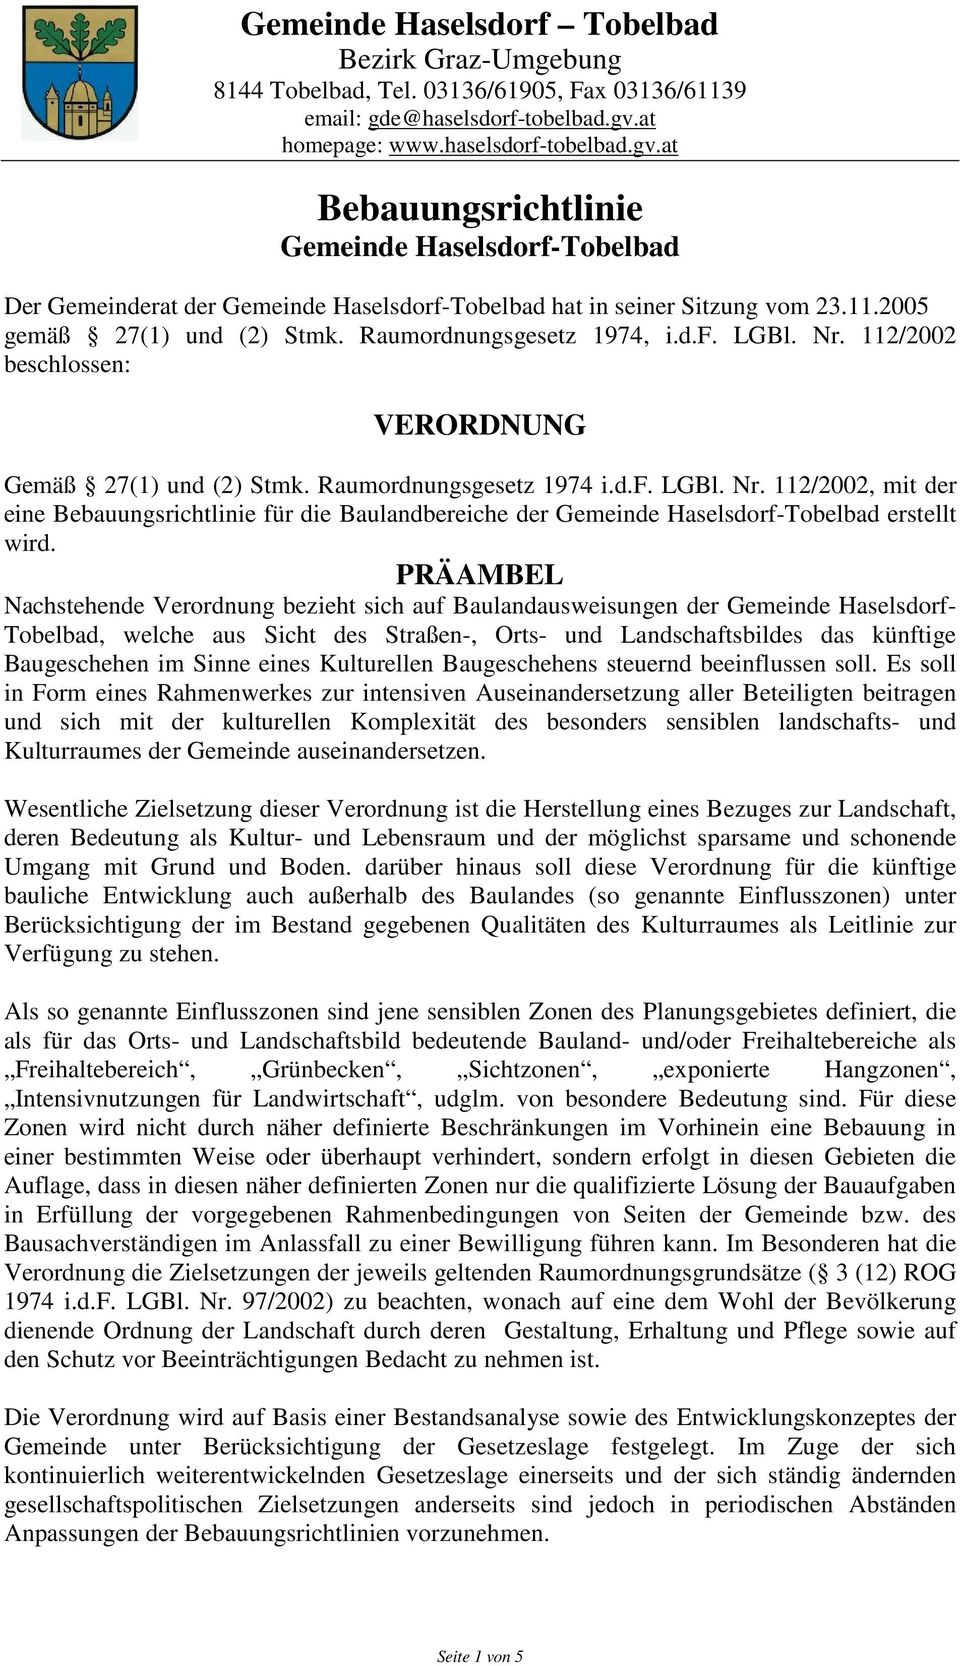 2005 gemäß 27(1) und (2) Stmk. Raumordnungsgesetz 1974, i.d.f. LGBl. Nr. 112/2002 beschlossen: VERORDNUNG Gemäß 27(1) und (2) Stmk. Raumordnungsgesetz 1974 i.d.f. LGBl. Nr. 112/2002, mit der eine Bebauungsrichtlinie für die Baulandbereiche der Gemeinde Haselsdorf-Tobelbad erstellt wird.